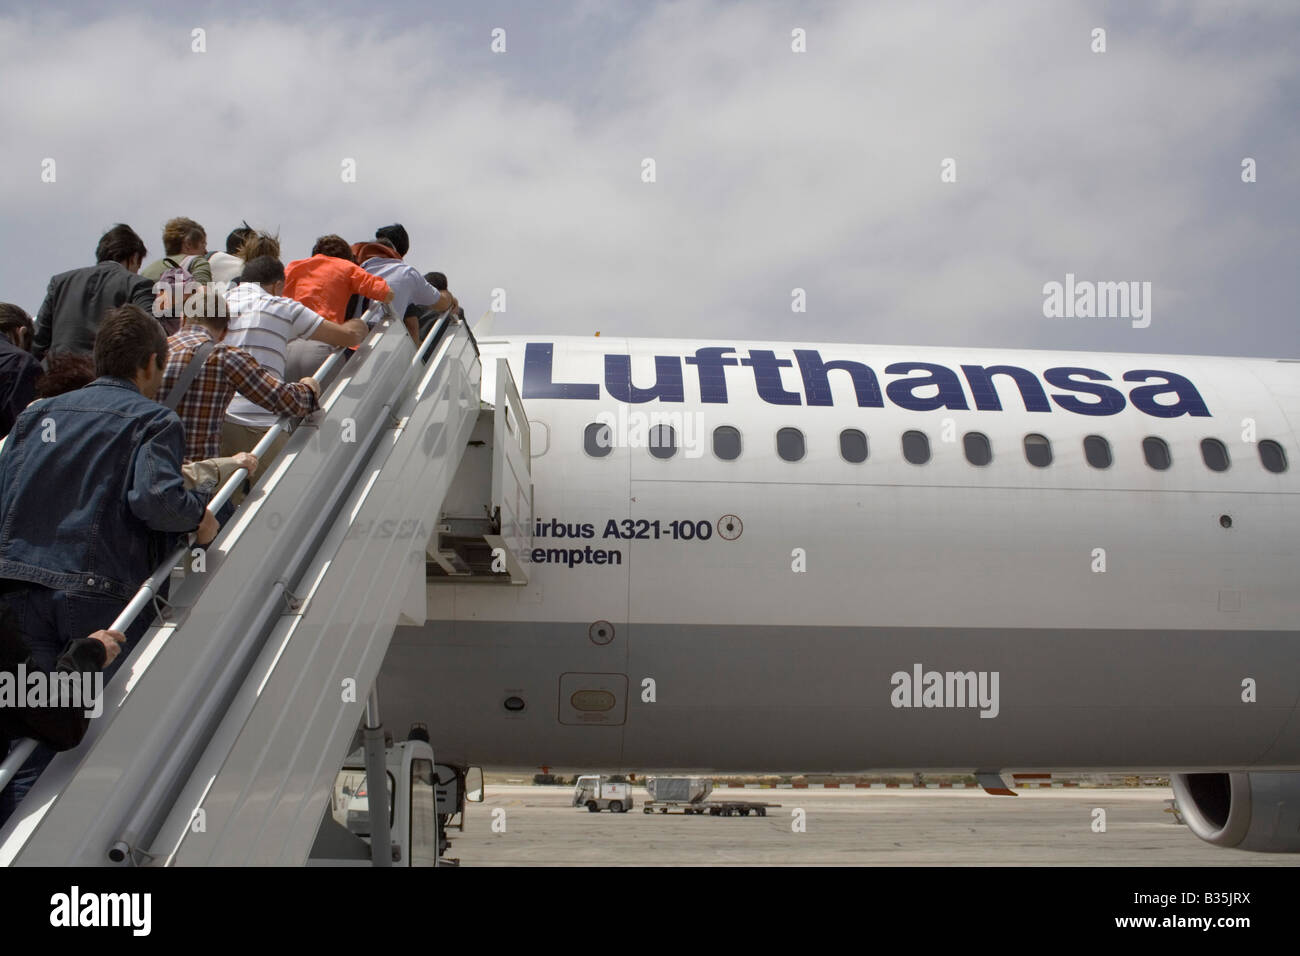 Commerciale viaggi dell'aria. I passeggeri di salire a bordo di un Lufthansa Airbus A321 aereo di linea per mezzo di una scala mobile o di una rampa di scale Foto Stock